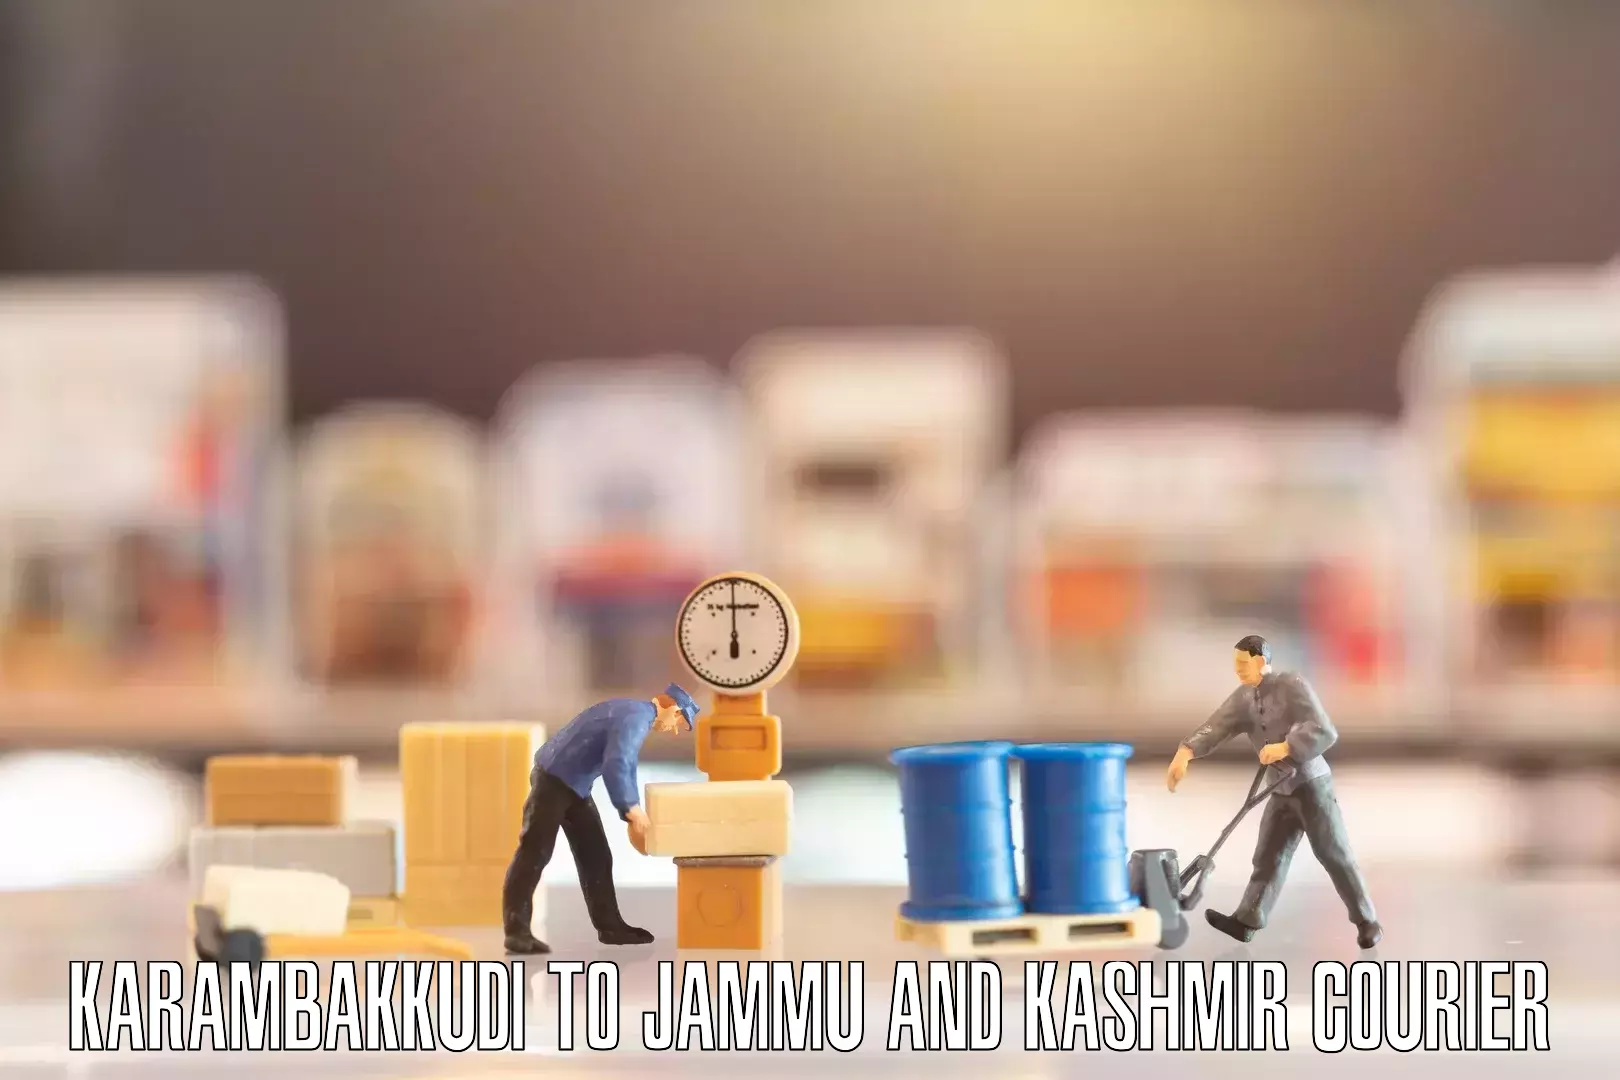 Furniture moving experts Karambakkudi to Jammu and Kashmir